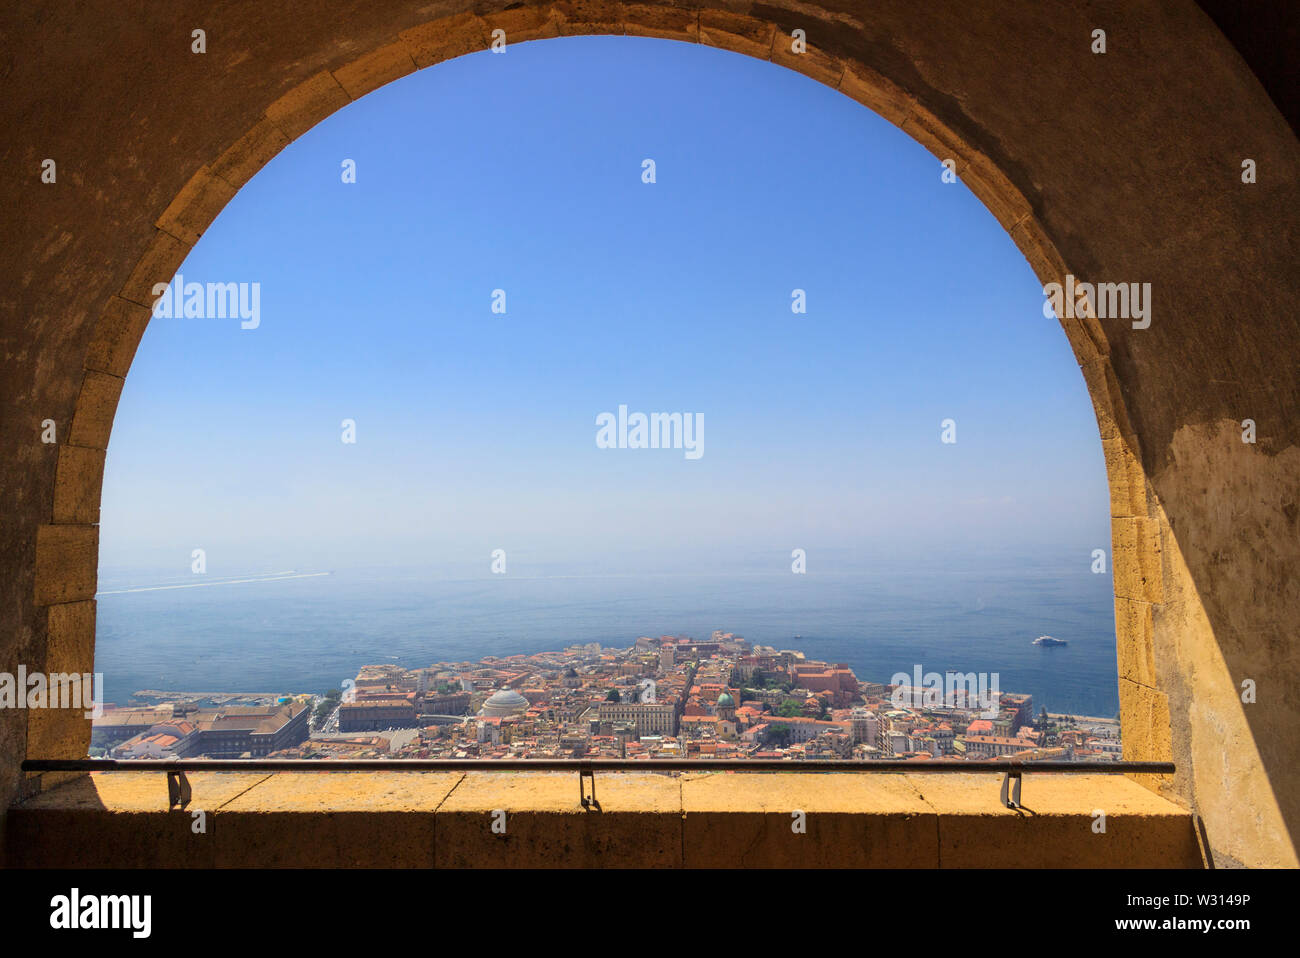 Panoramablick über die Stadt Neapel durch den Bogen der mittelalterlichen Festung Castel Sant'Elmo. Skyline und den Golf von Neapel, Kampanien, Italien. Stockfoto